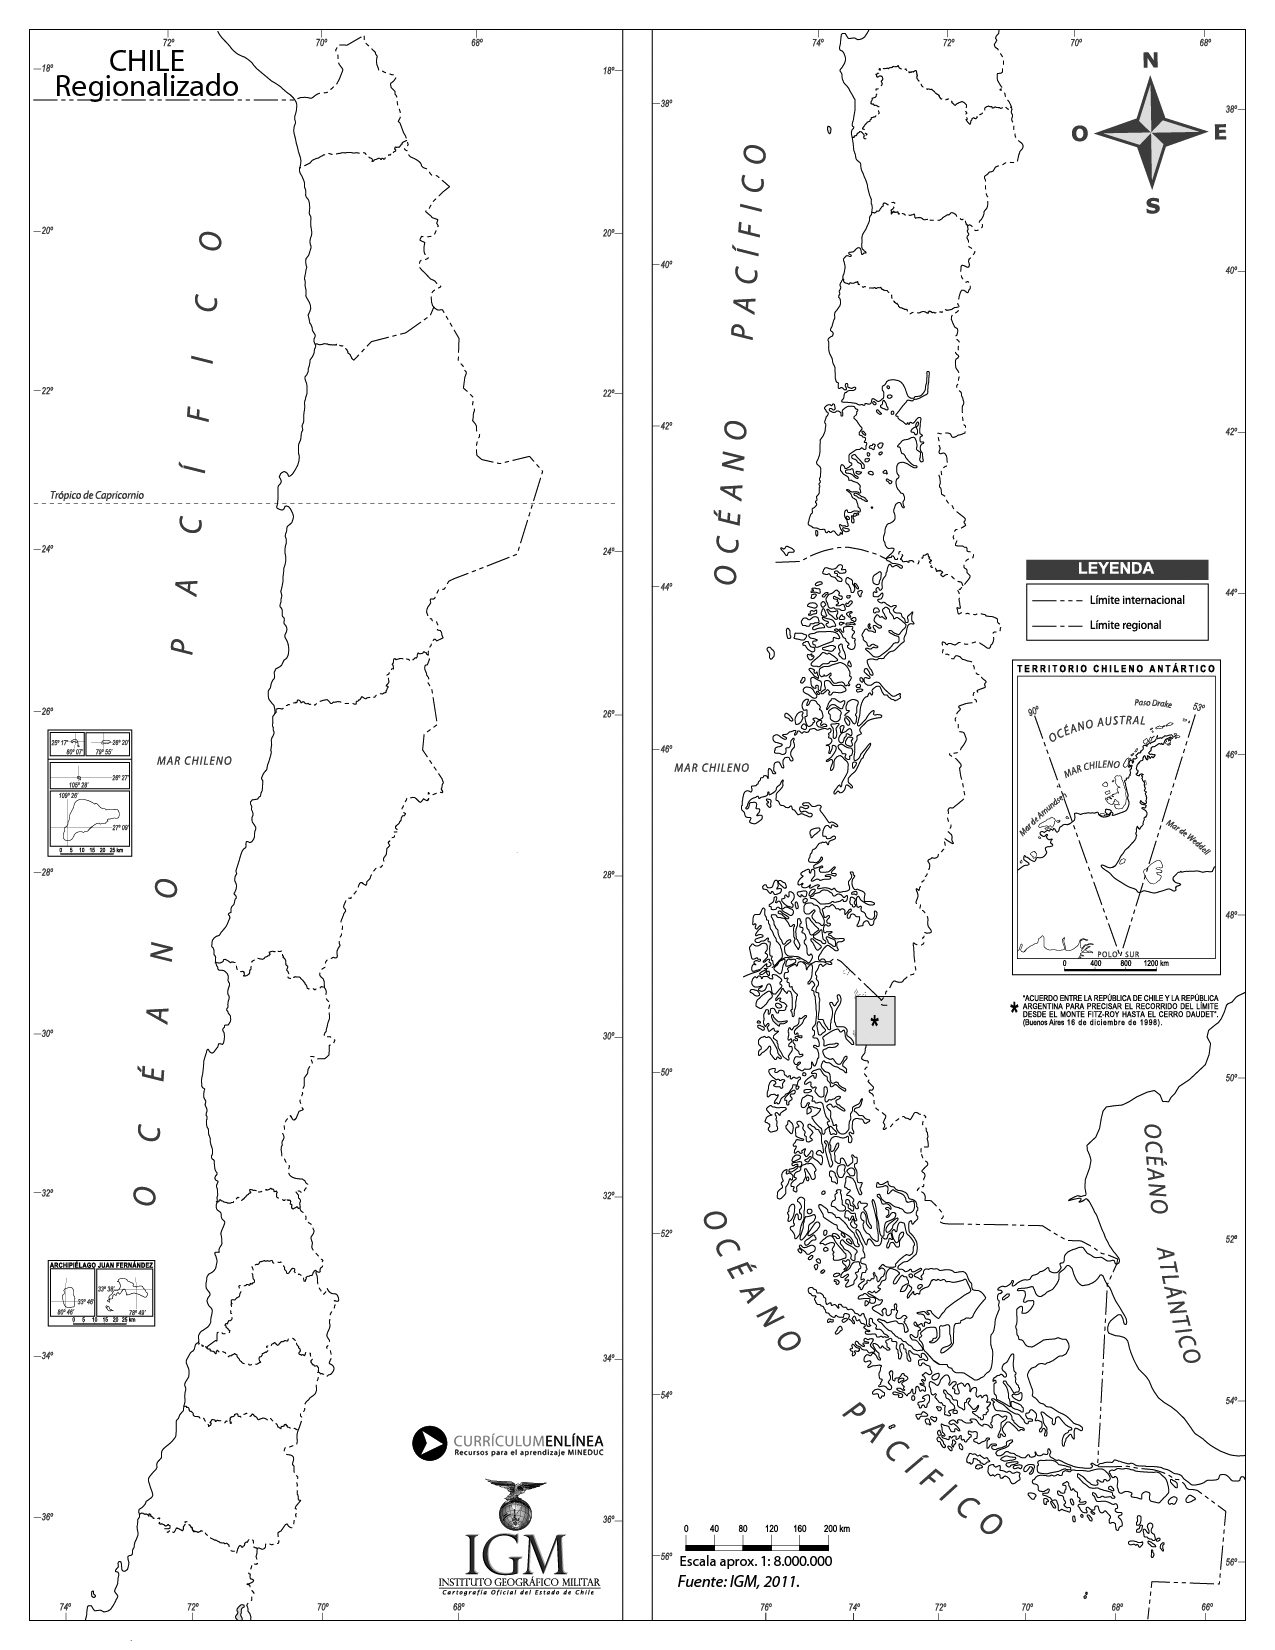 Mapa Chile regionalizado mudo - Currículum en línea ...